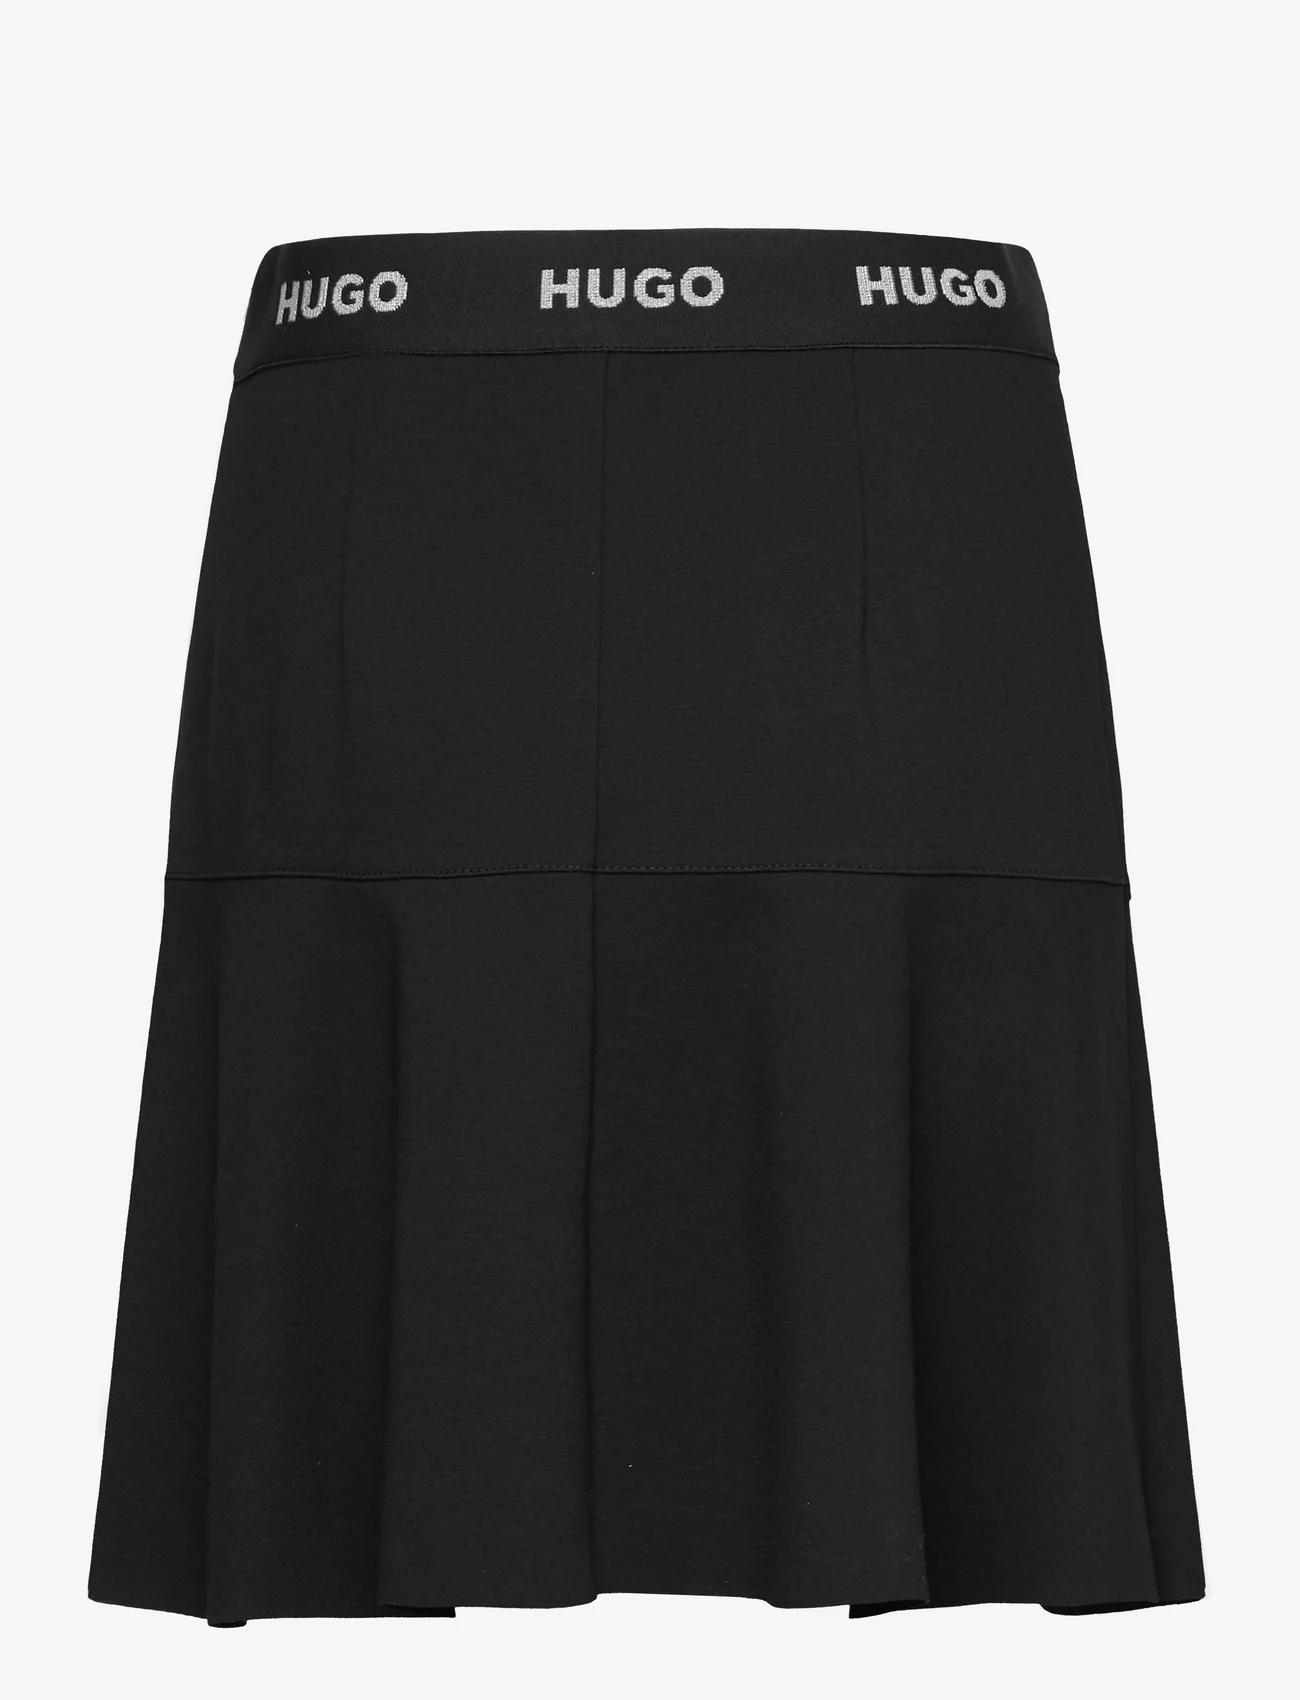 HUGO - Relosana - spódnice mini - black - 1